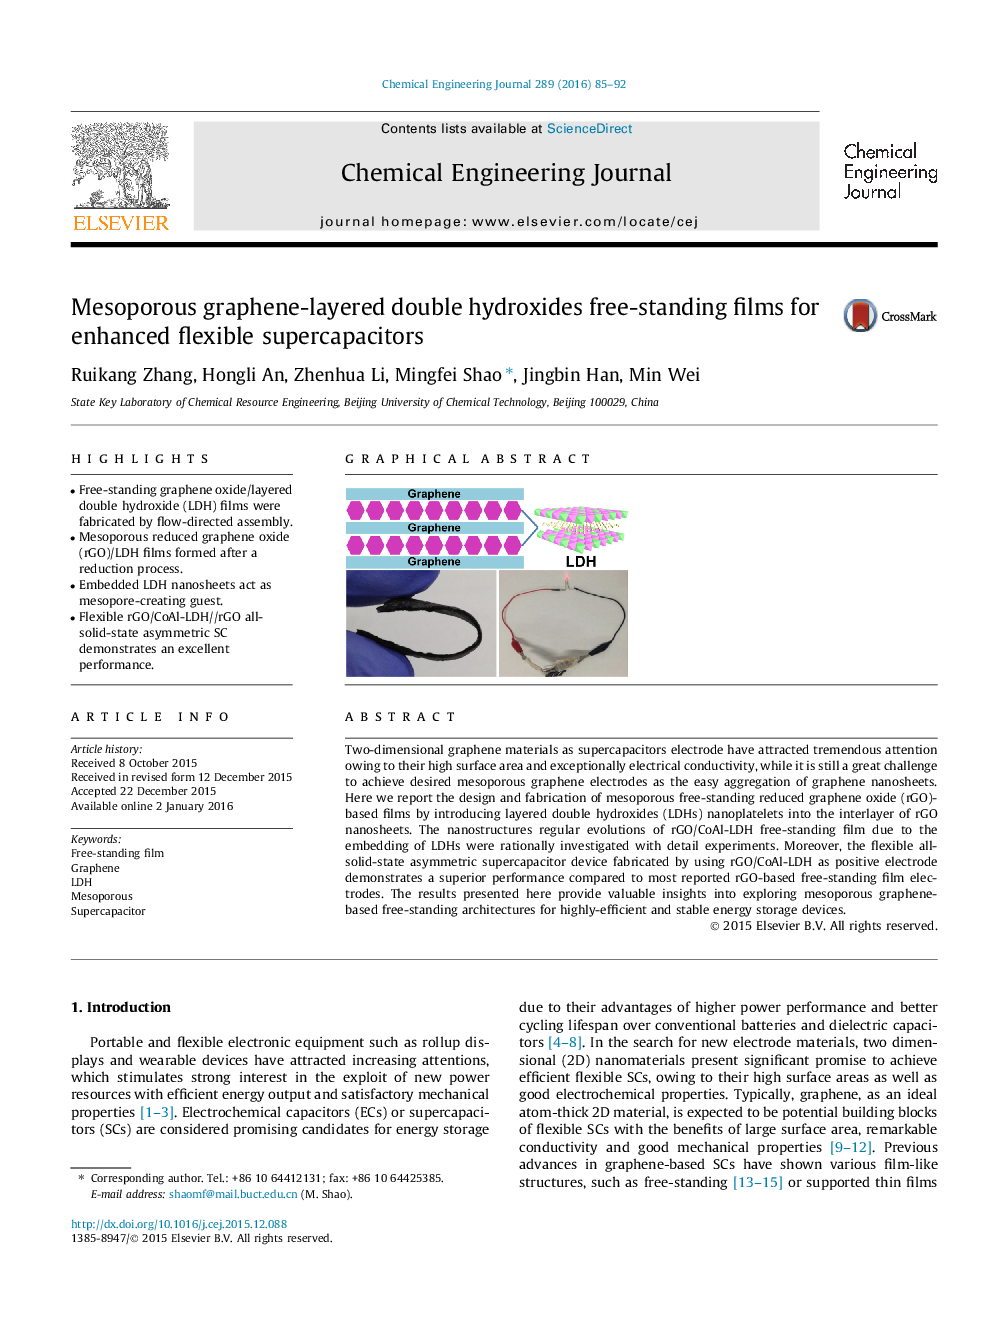 فیلم های دو جداره هیدروکسید دوقلوهای چند لایه حاوی گرافن برای افزایش سوپراسپتورهای انعطاف پذیر انعطاف پذیر 